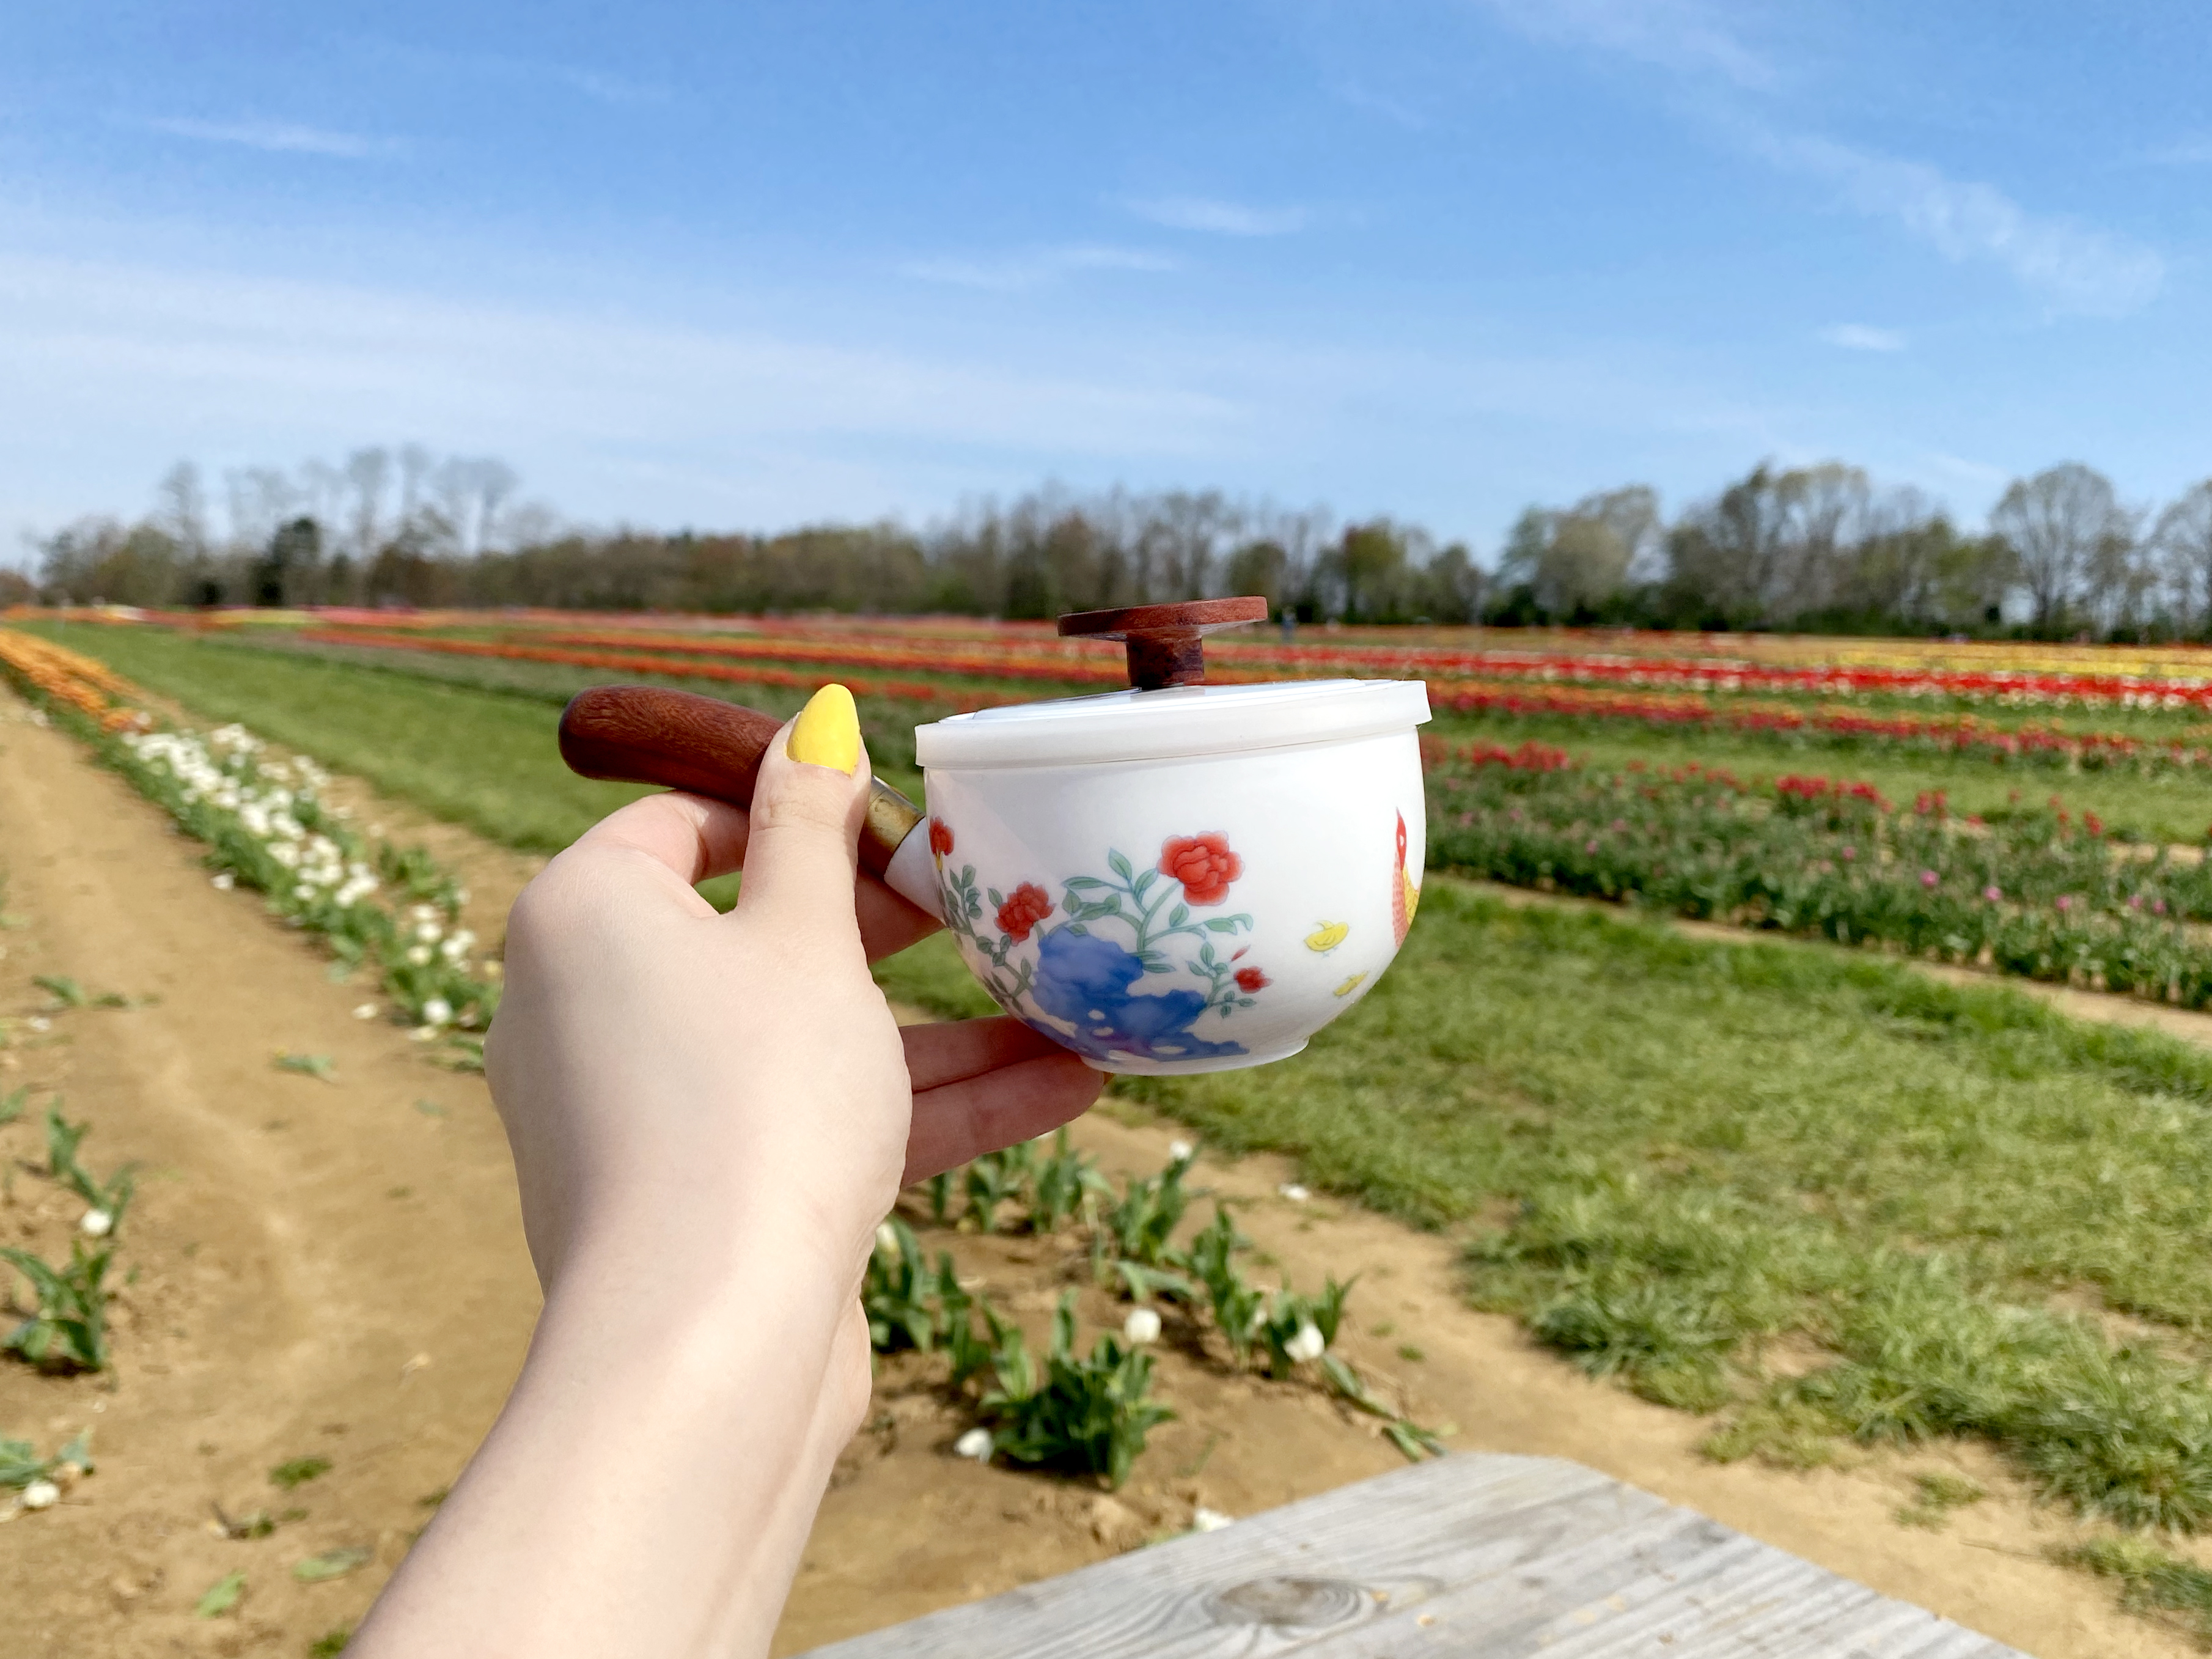 Porcelain Compact Travel Tea Set For Two - Jingdezhen